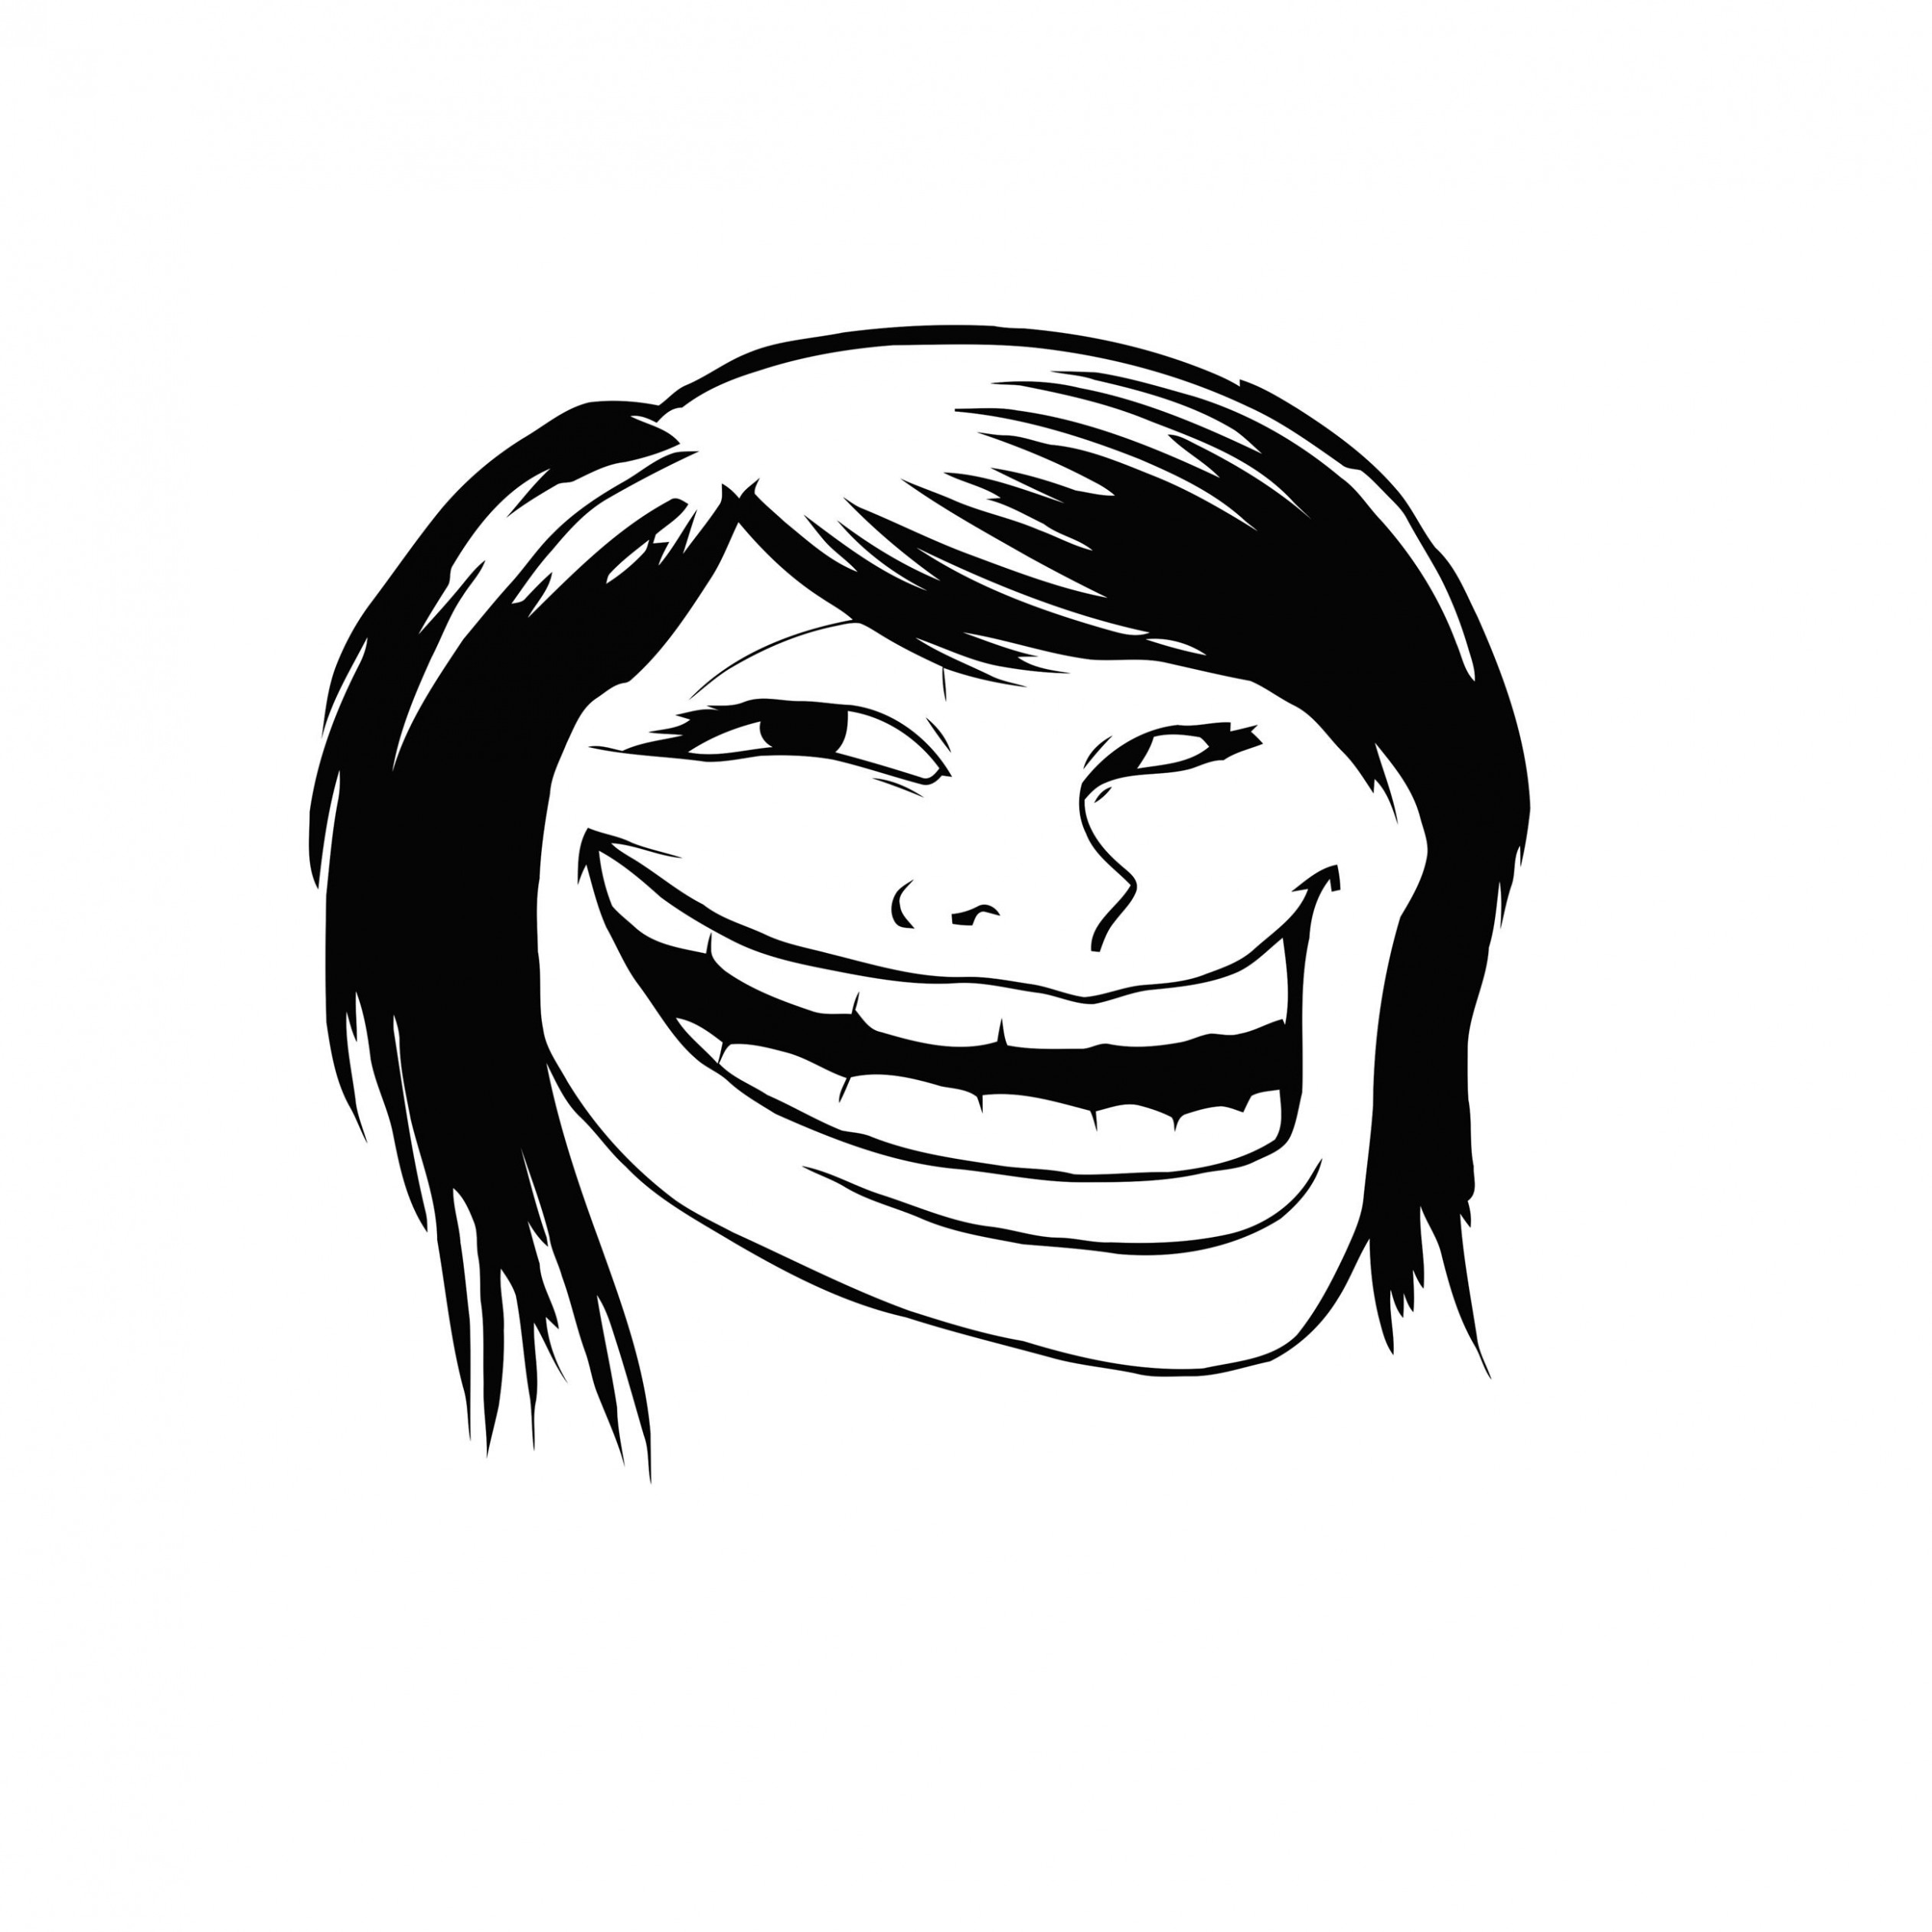 Female Troll Face Meme Wallpaper for Apple iPad 3